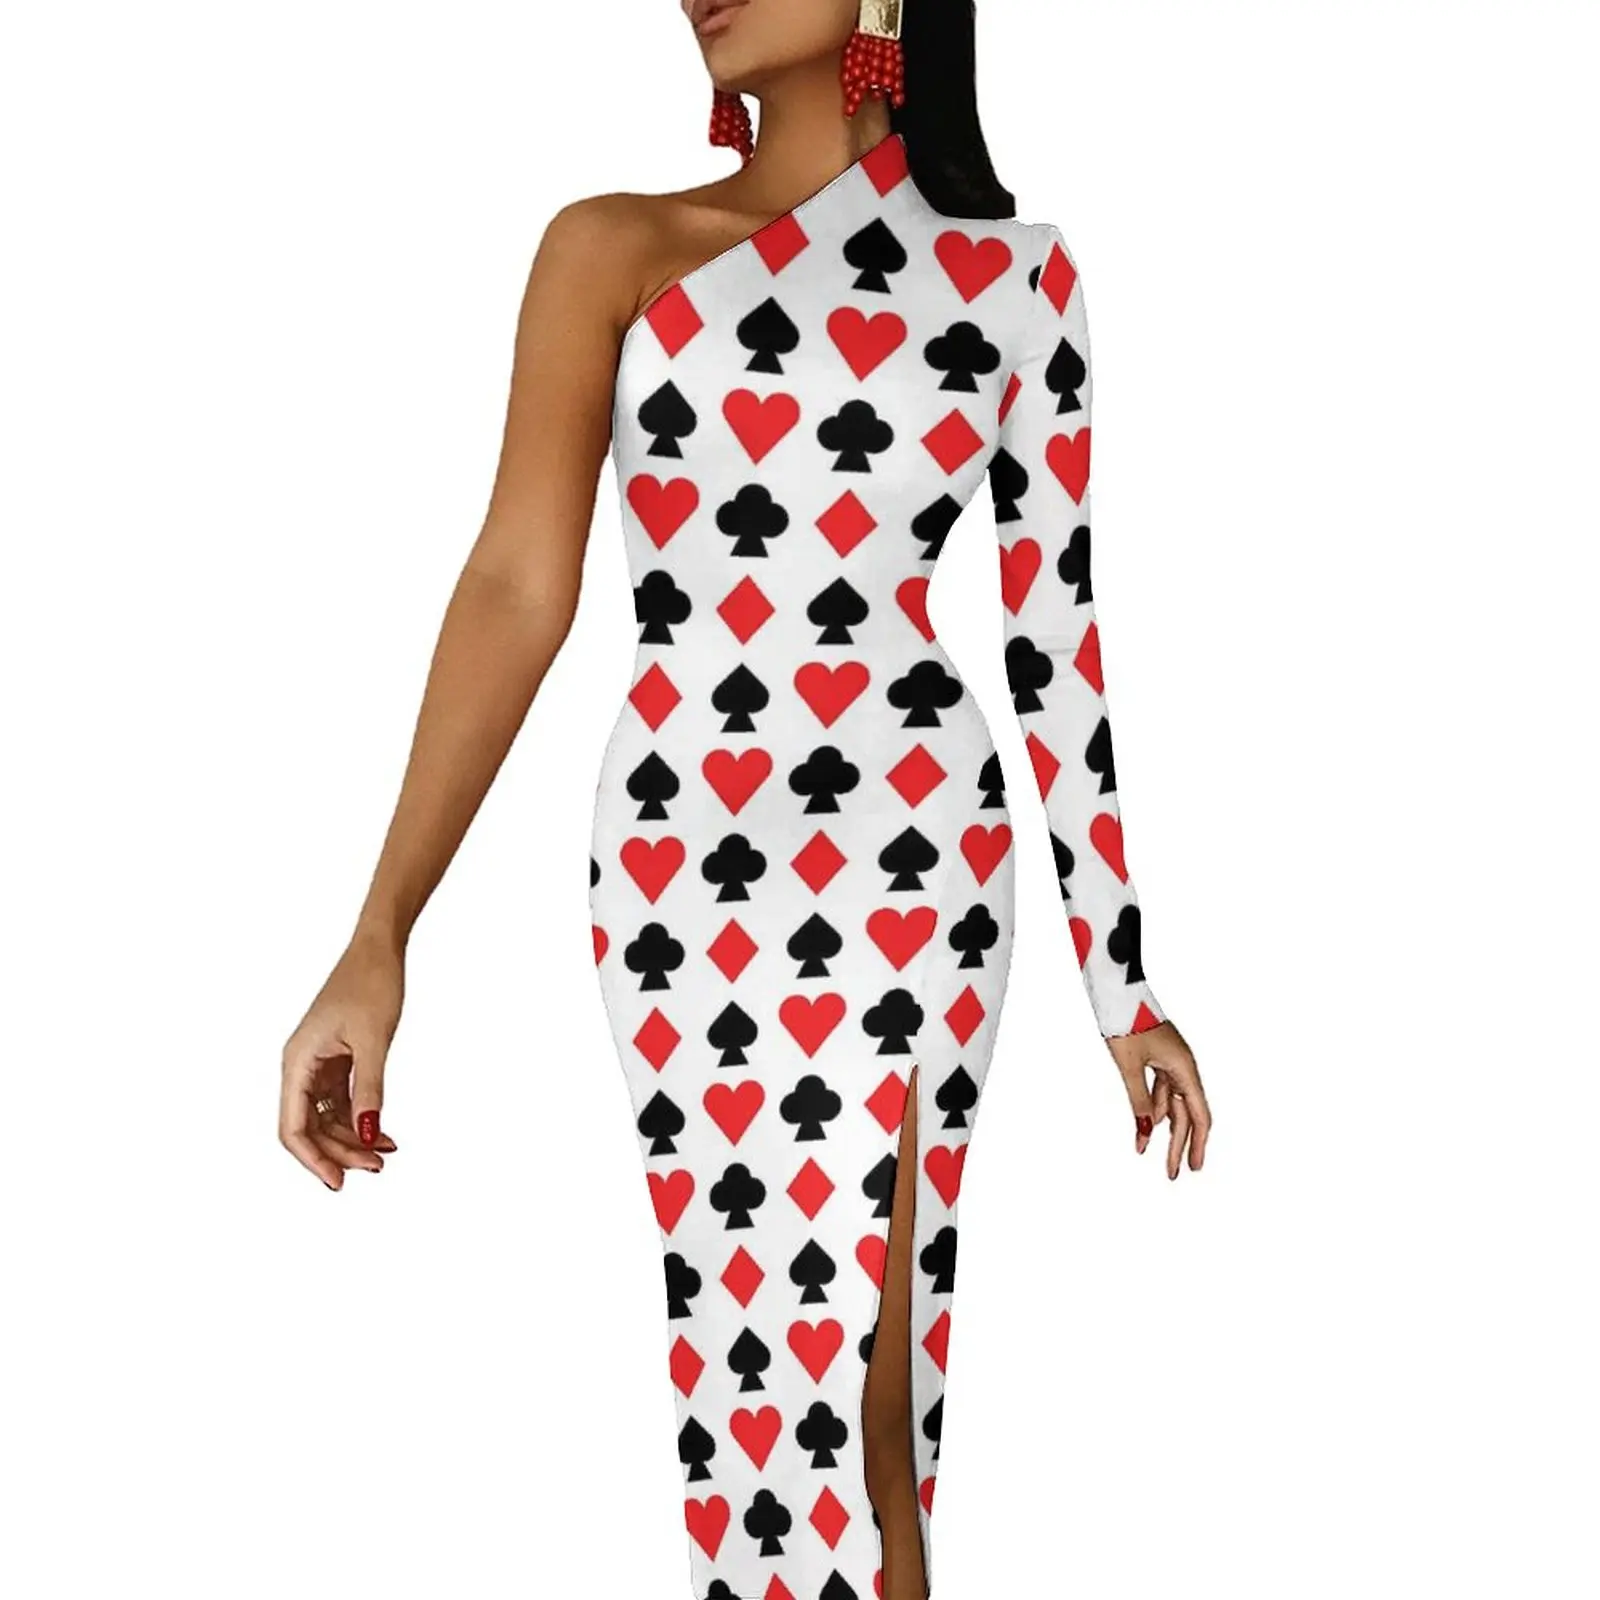 

Облегающее платье с принтом игральных карт, весеннее длинное платье в стиле ретро с высоким разрезом, платье на одно плечо с графическим принтом